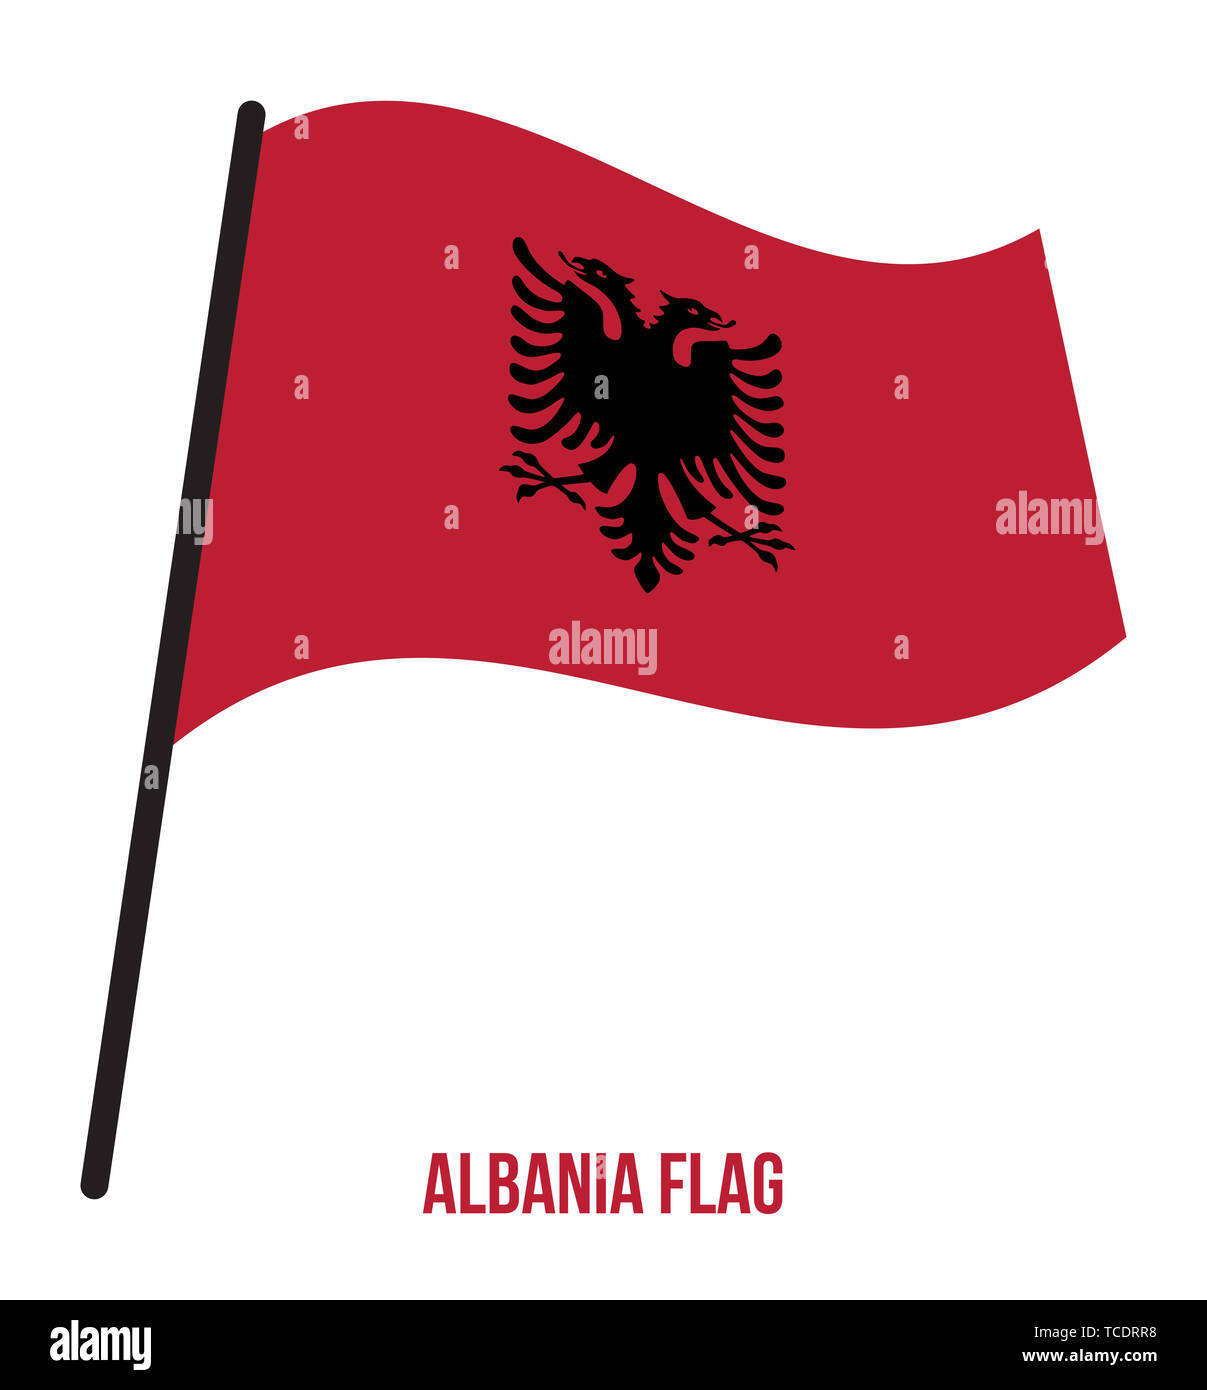 Vettori e Illustrazioni di Bandiera albanese con download gratuito